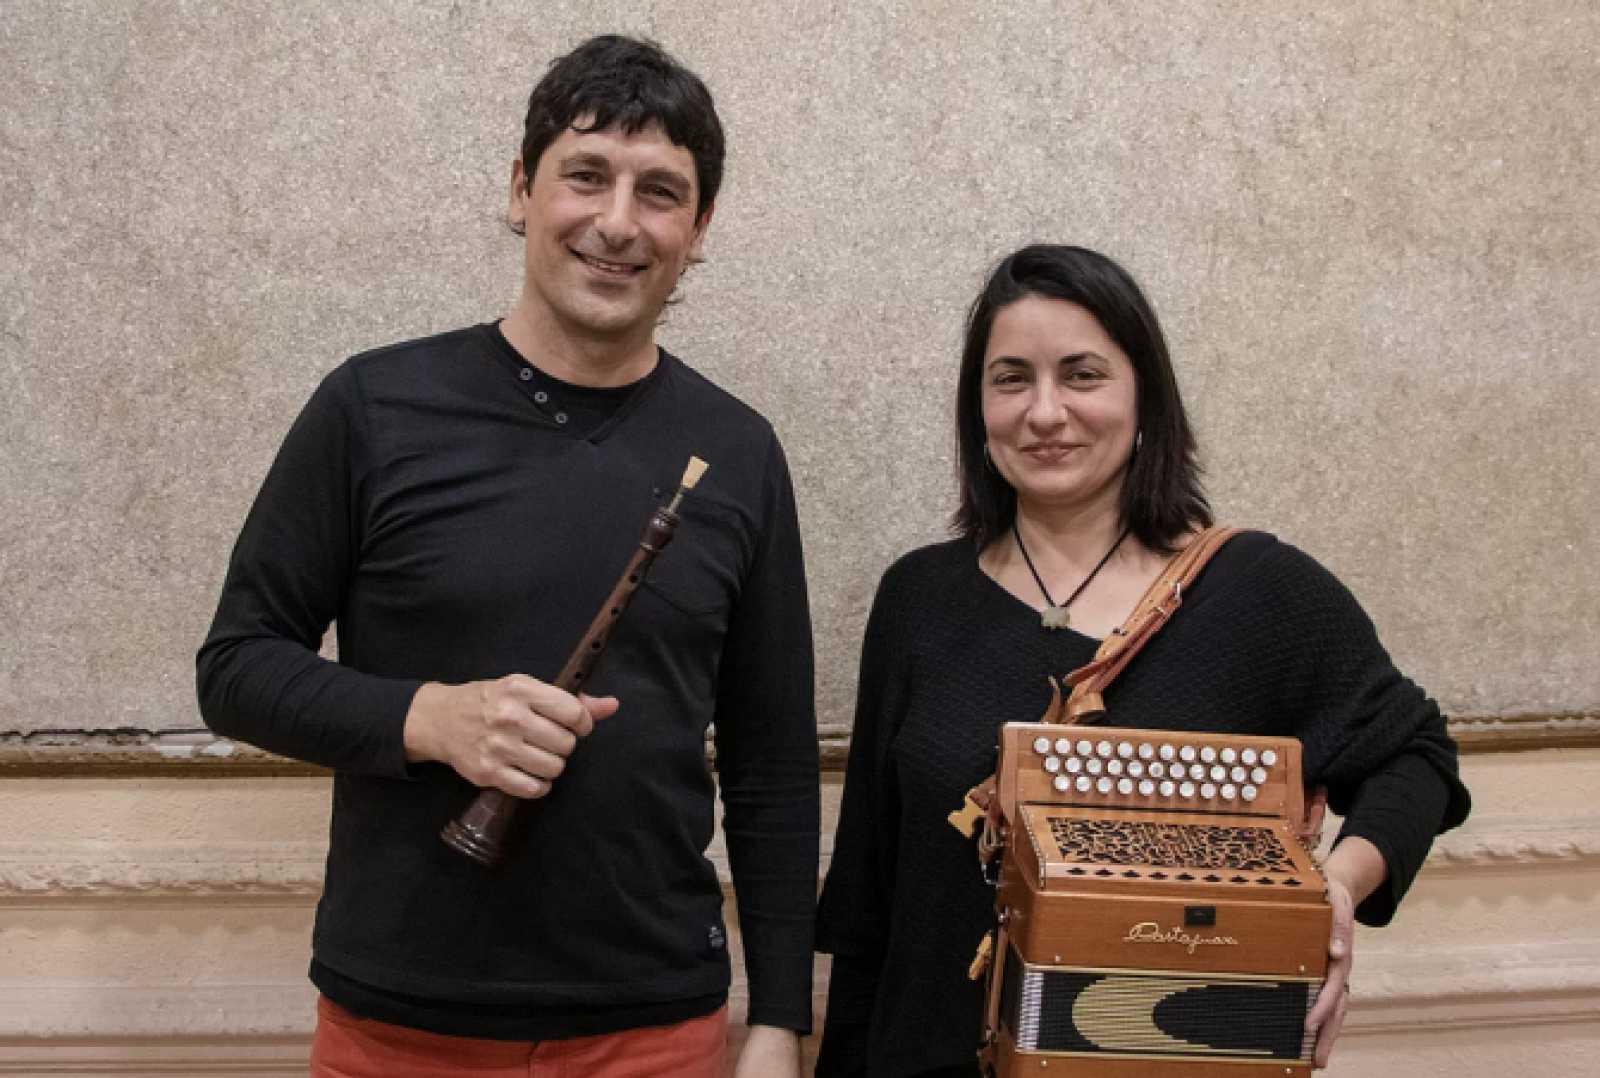 Sant Pere 2021: concert vermut amb Cati Plana i Pau Puig